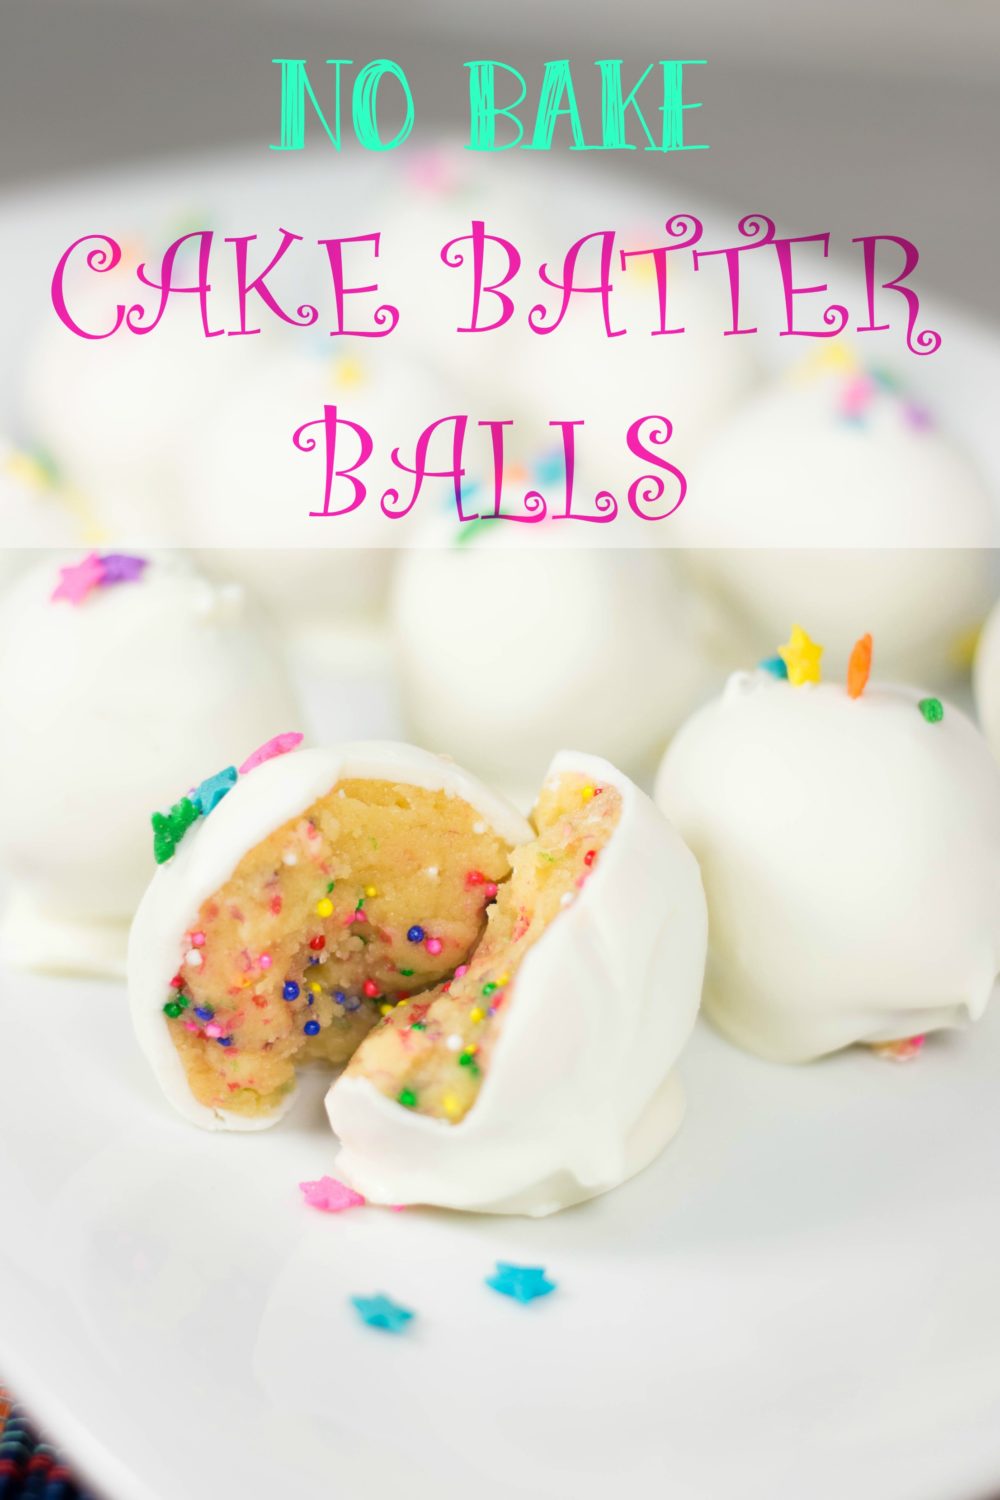 No bake cake batter balls recipe